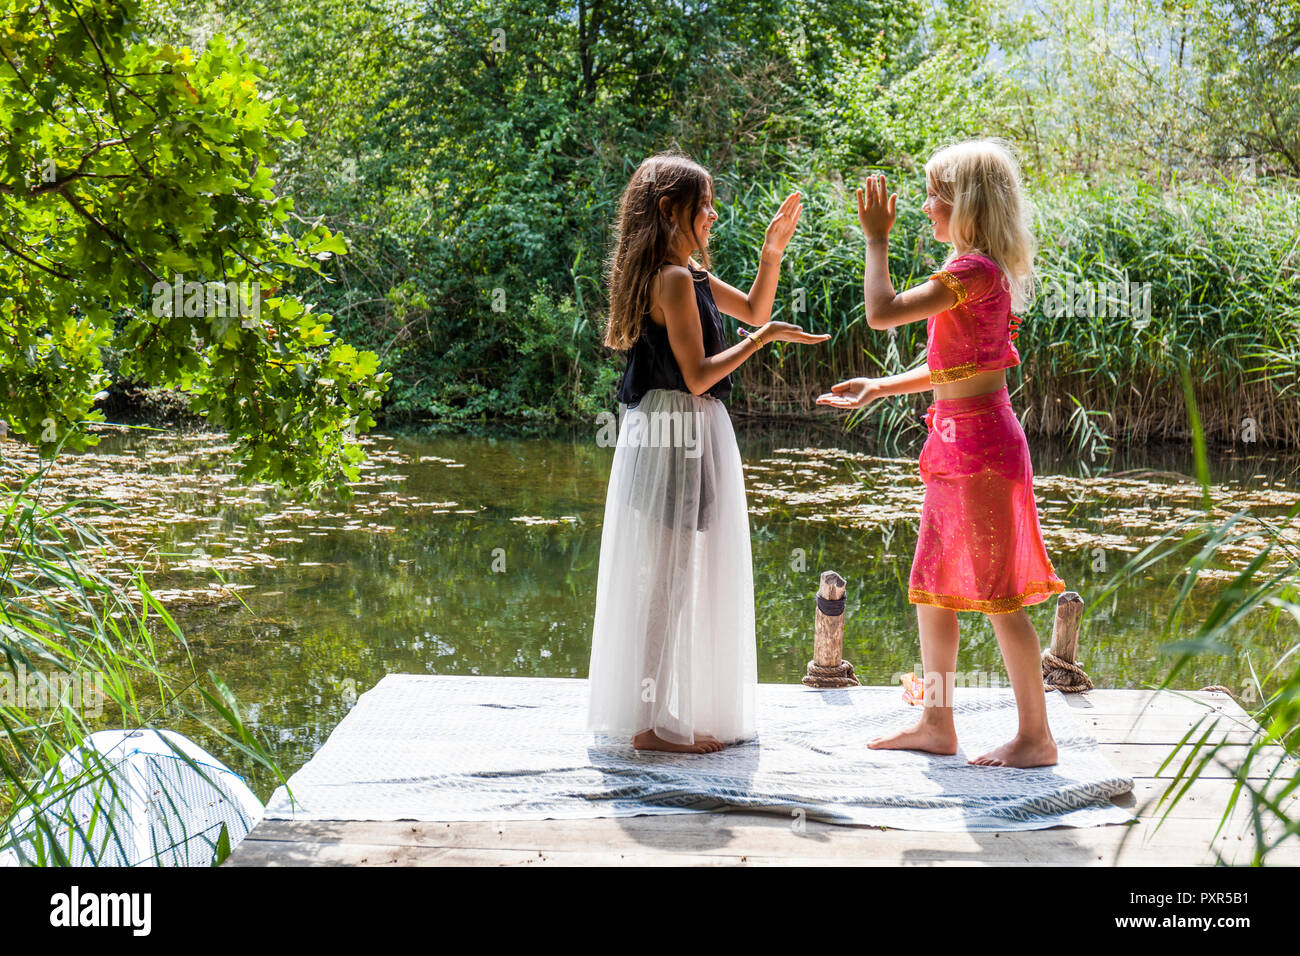 Zwei Mädchen auf der Mole in einem Teich in Kostüme ein händeklatschen Spiel Stockfoto